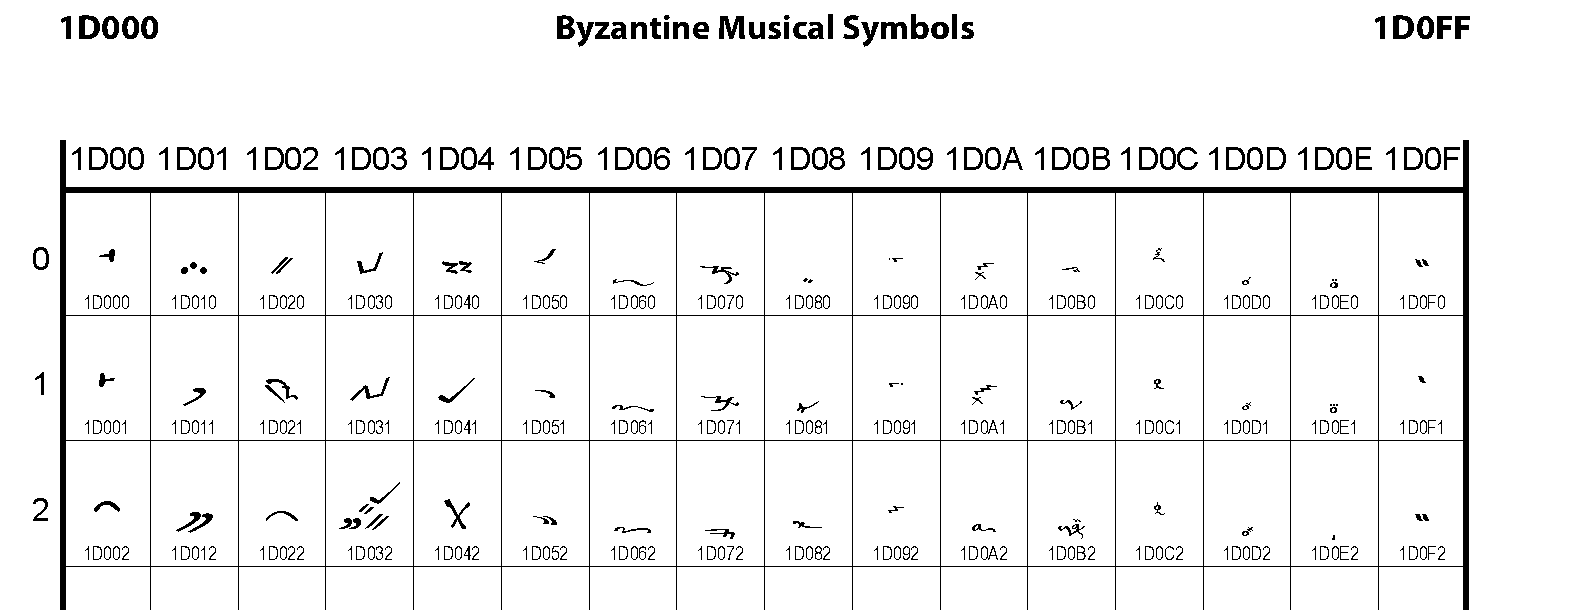 Unicode - Byzantine Musical Symbols